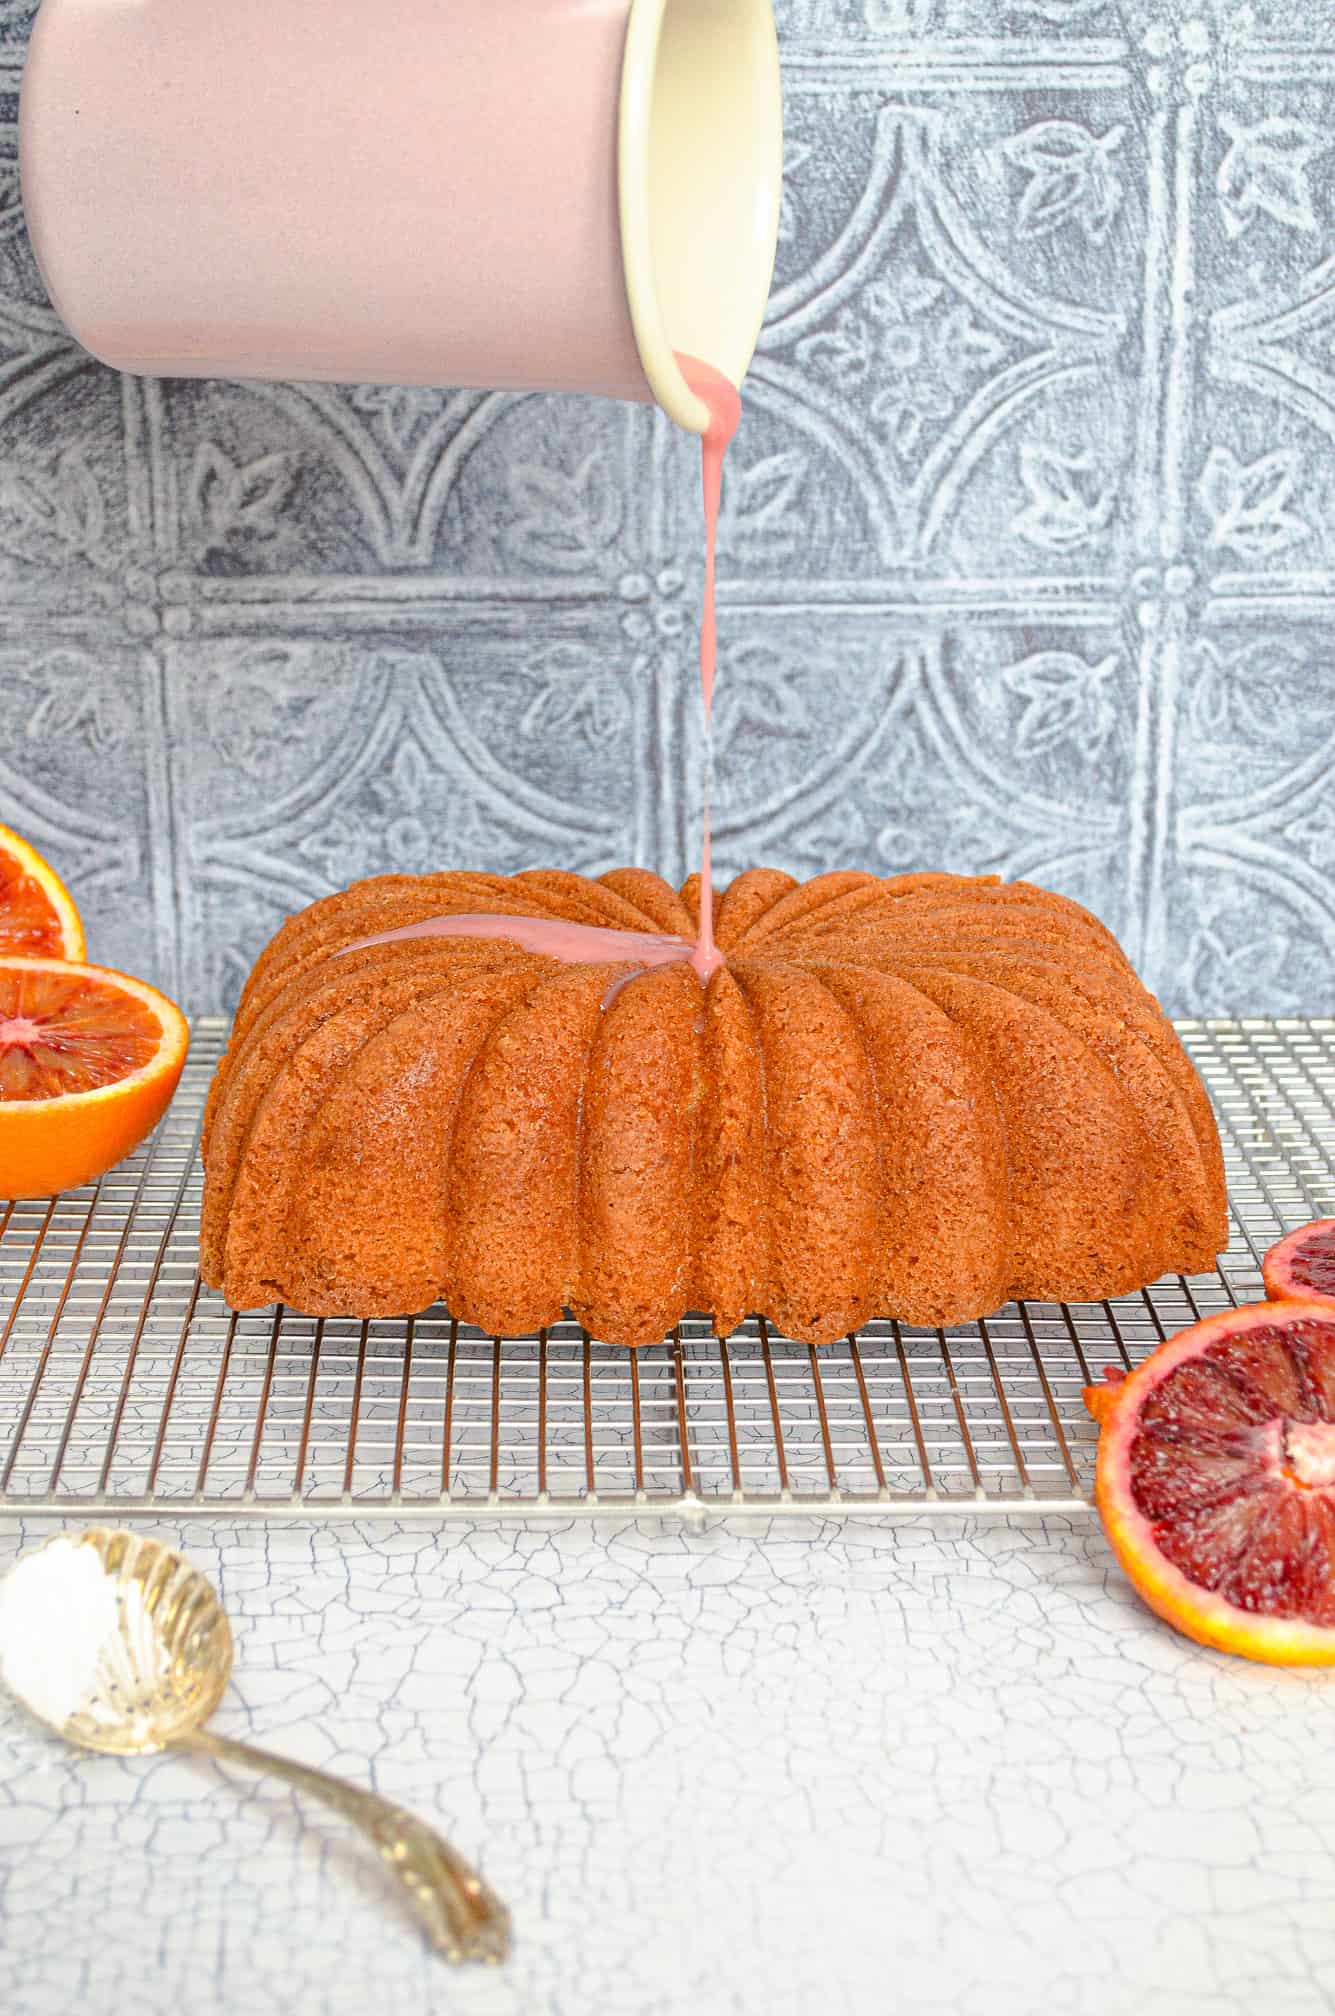 mid-glaze on loaf cake